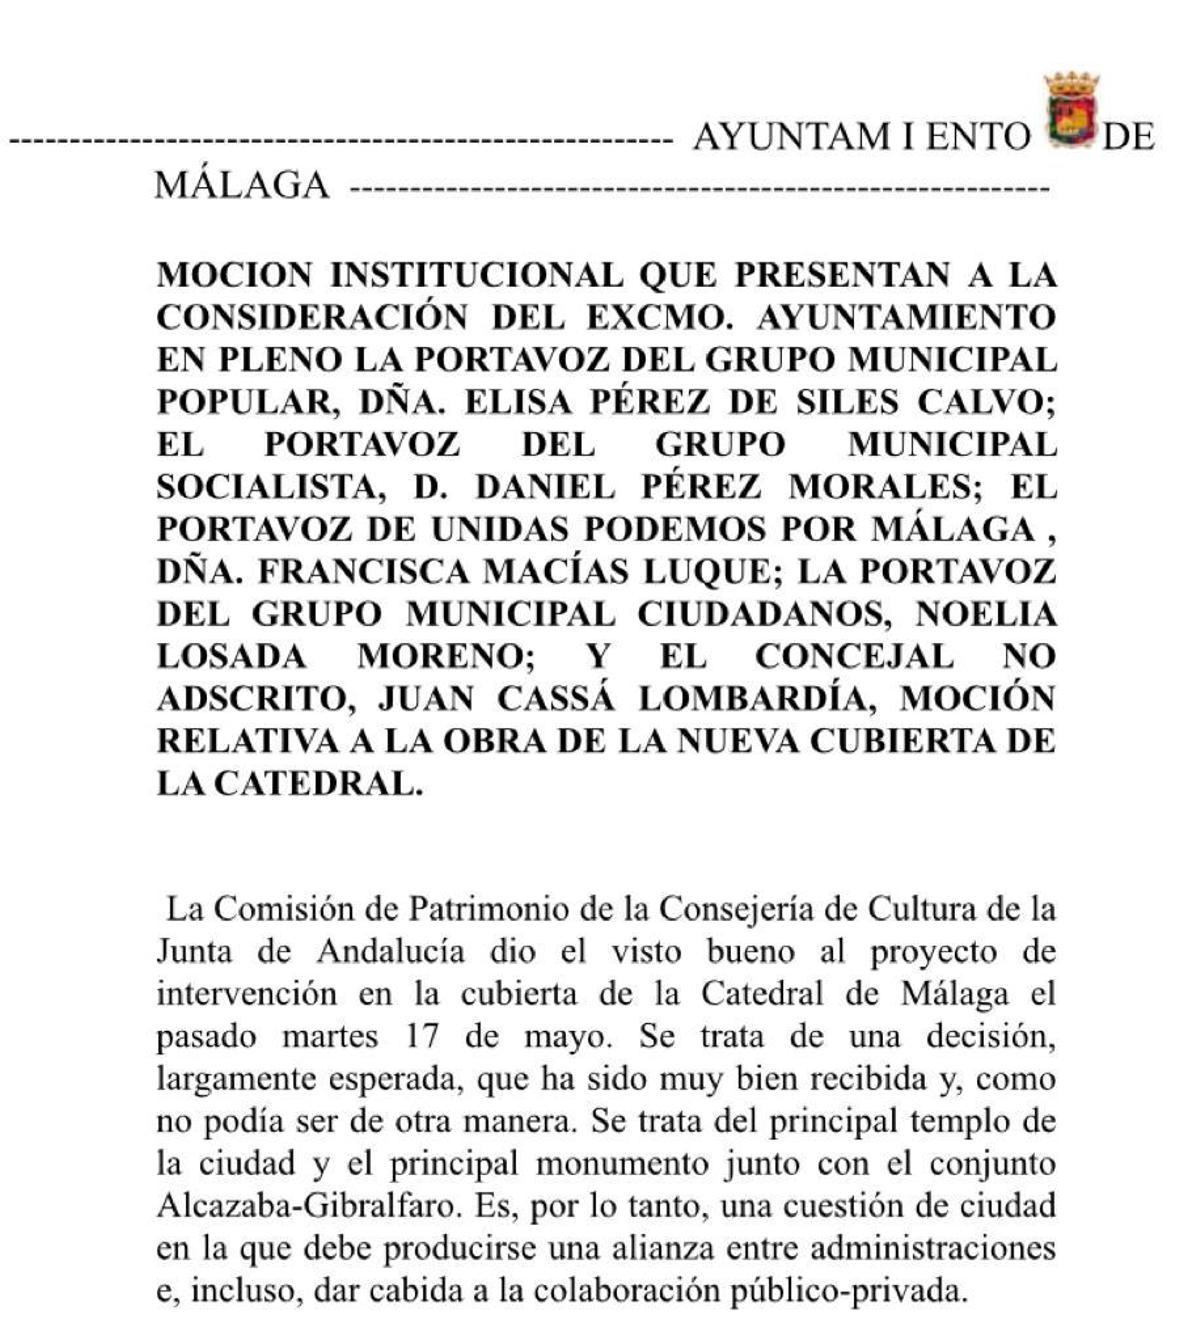 Imagen de la moción institucional del Ayuntamiento de Málaga sobre la Catedral.